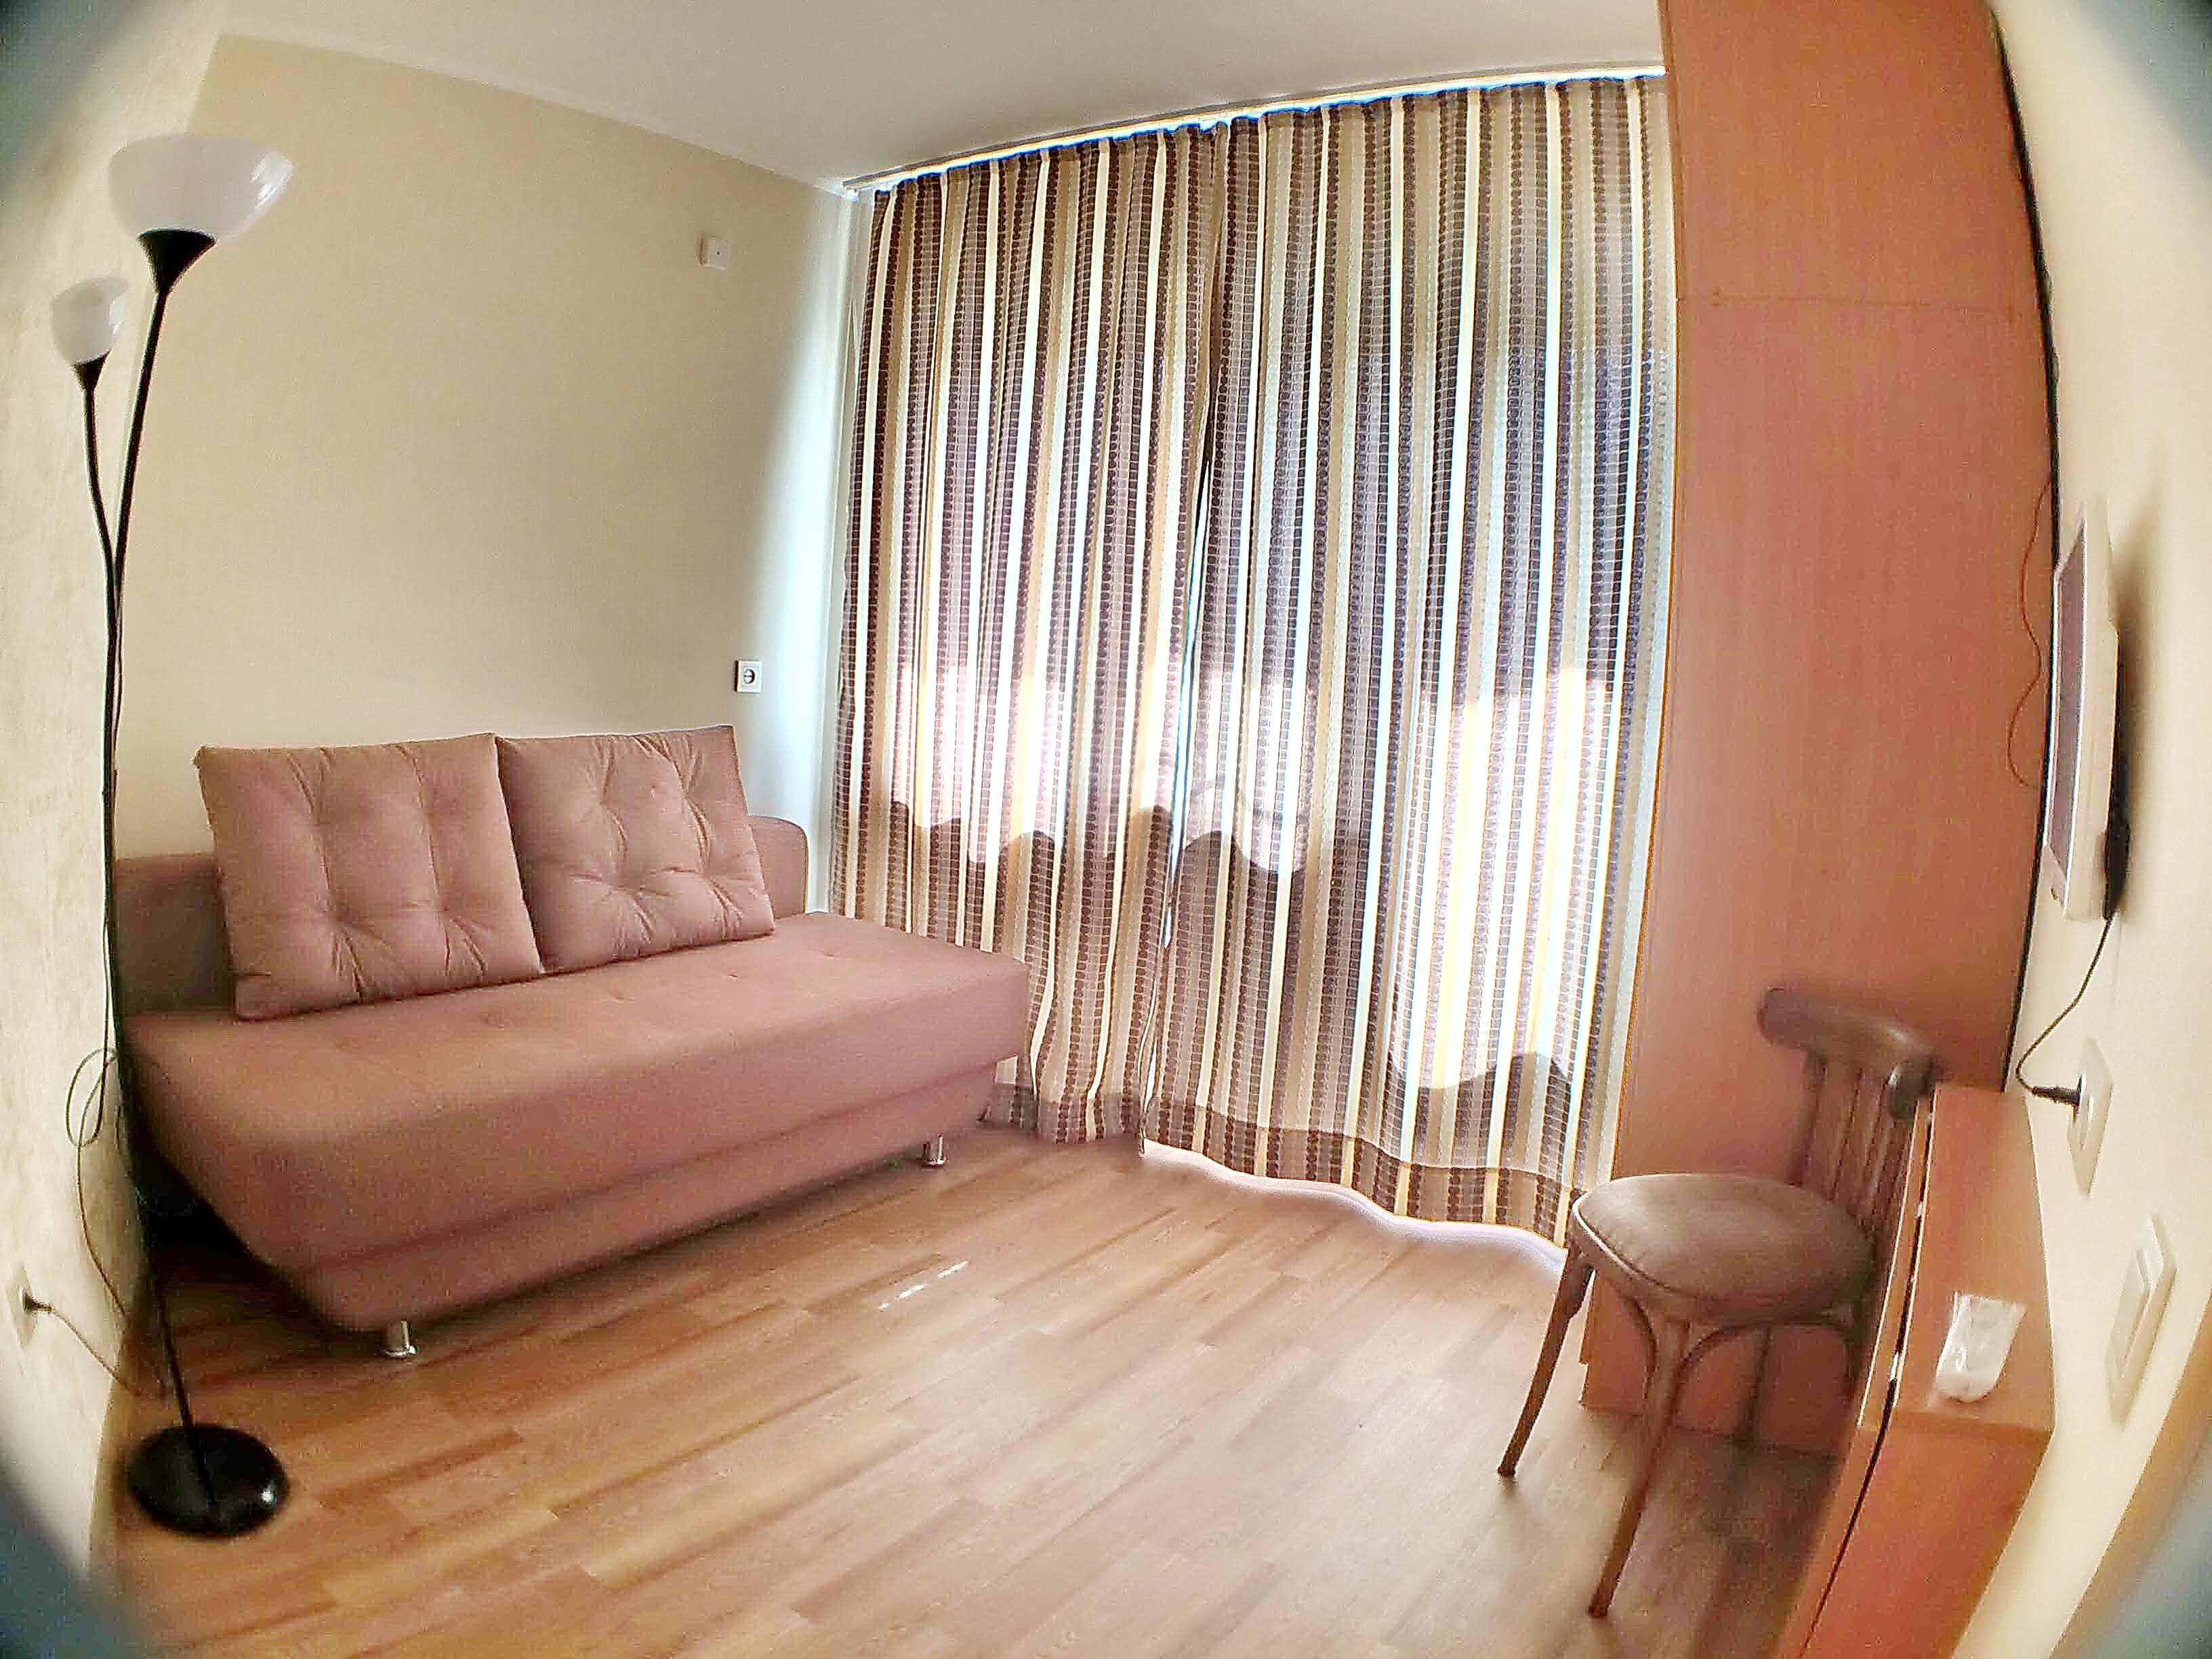 Двухкомнатная квартира на 4 человека, 33кв.м, пр.Ленина 37